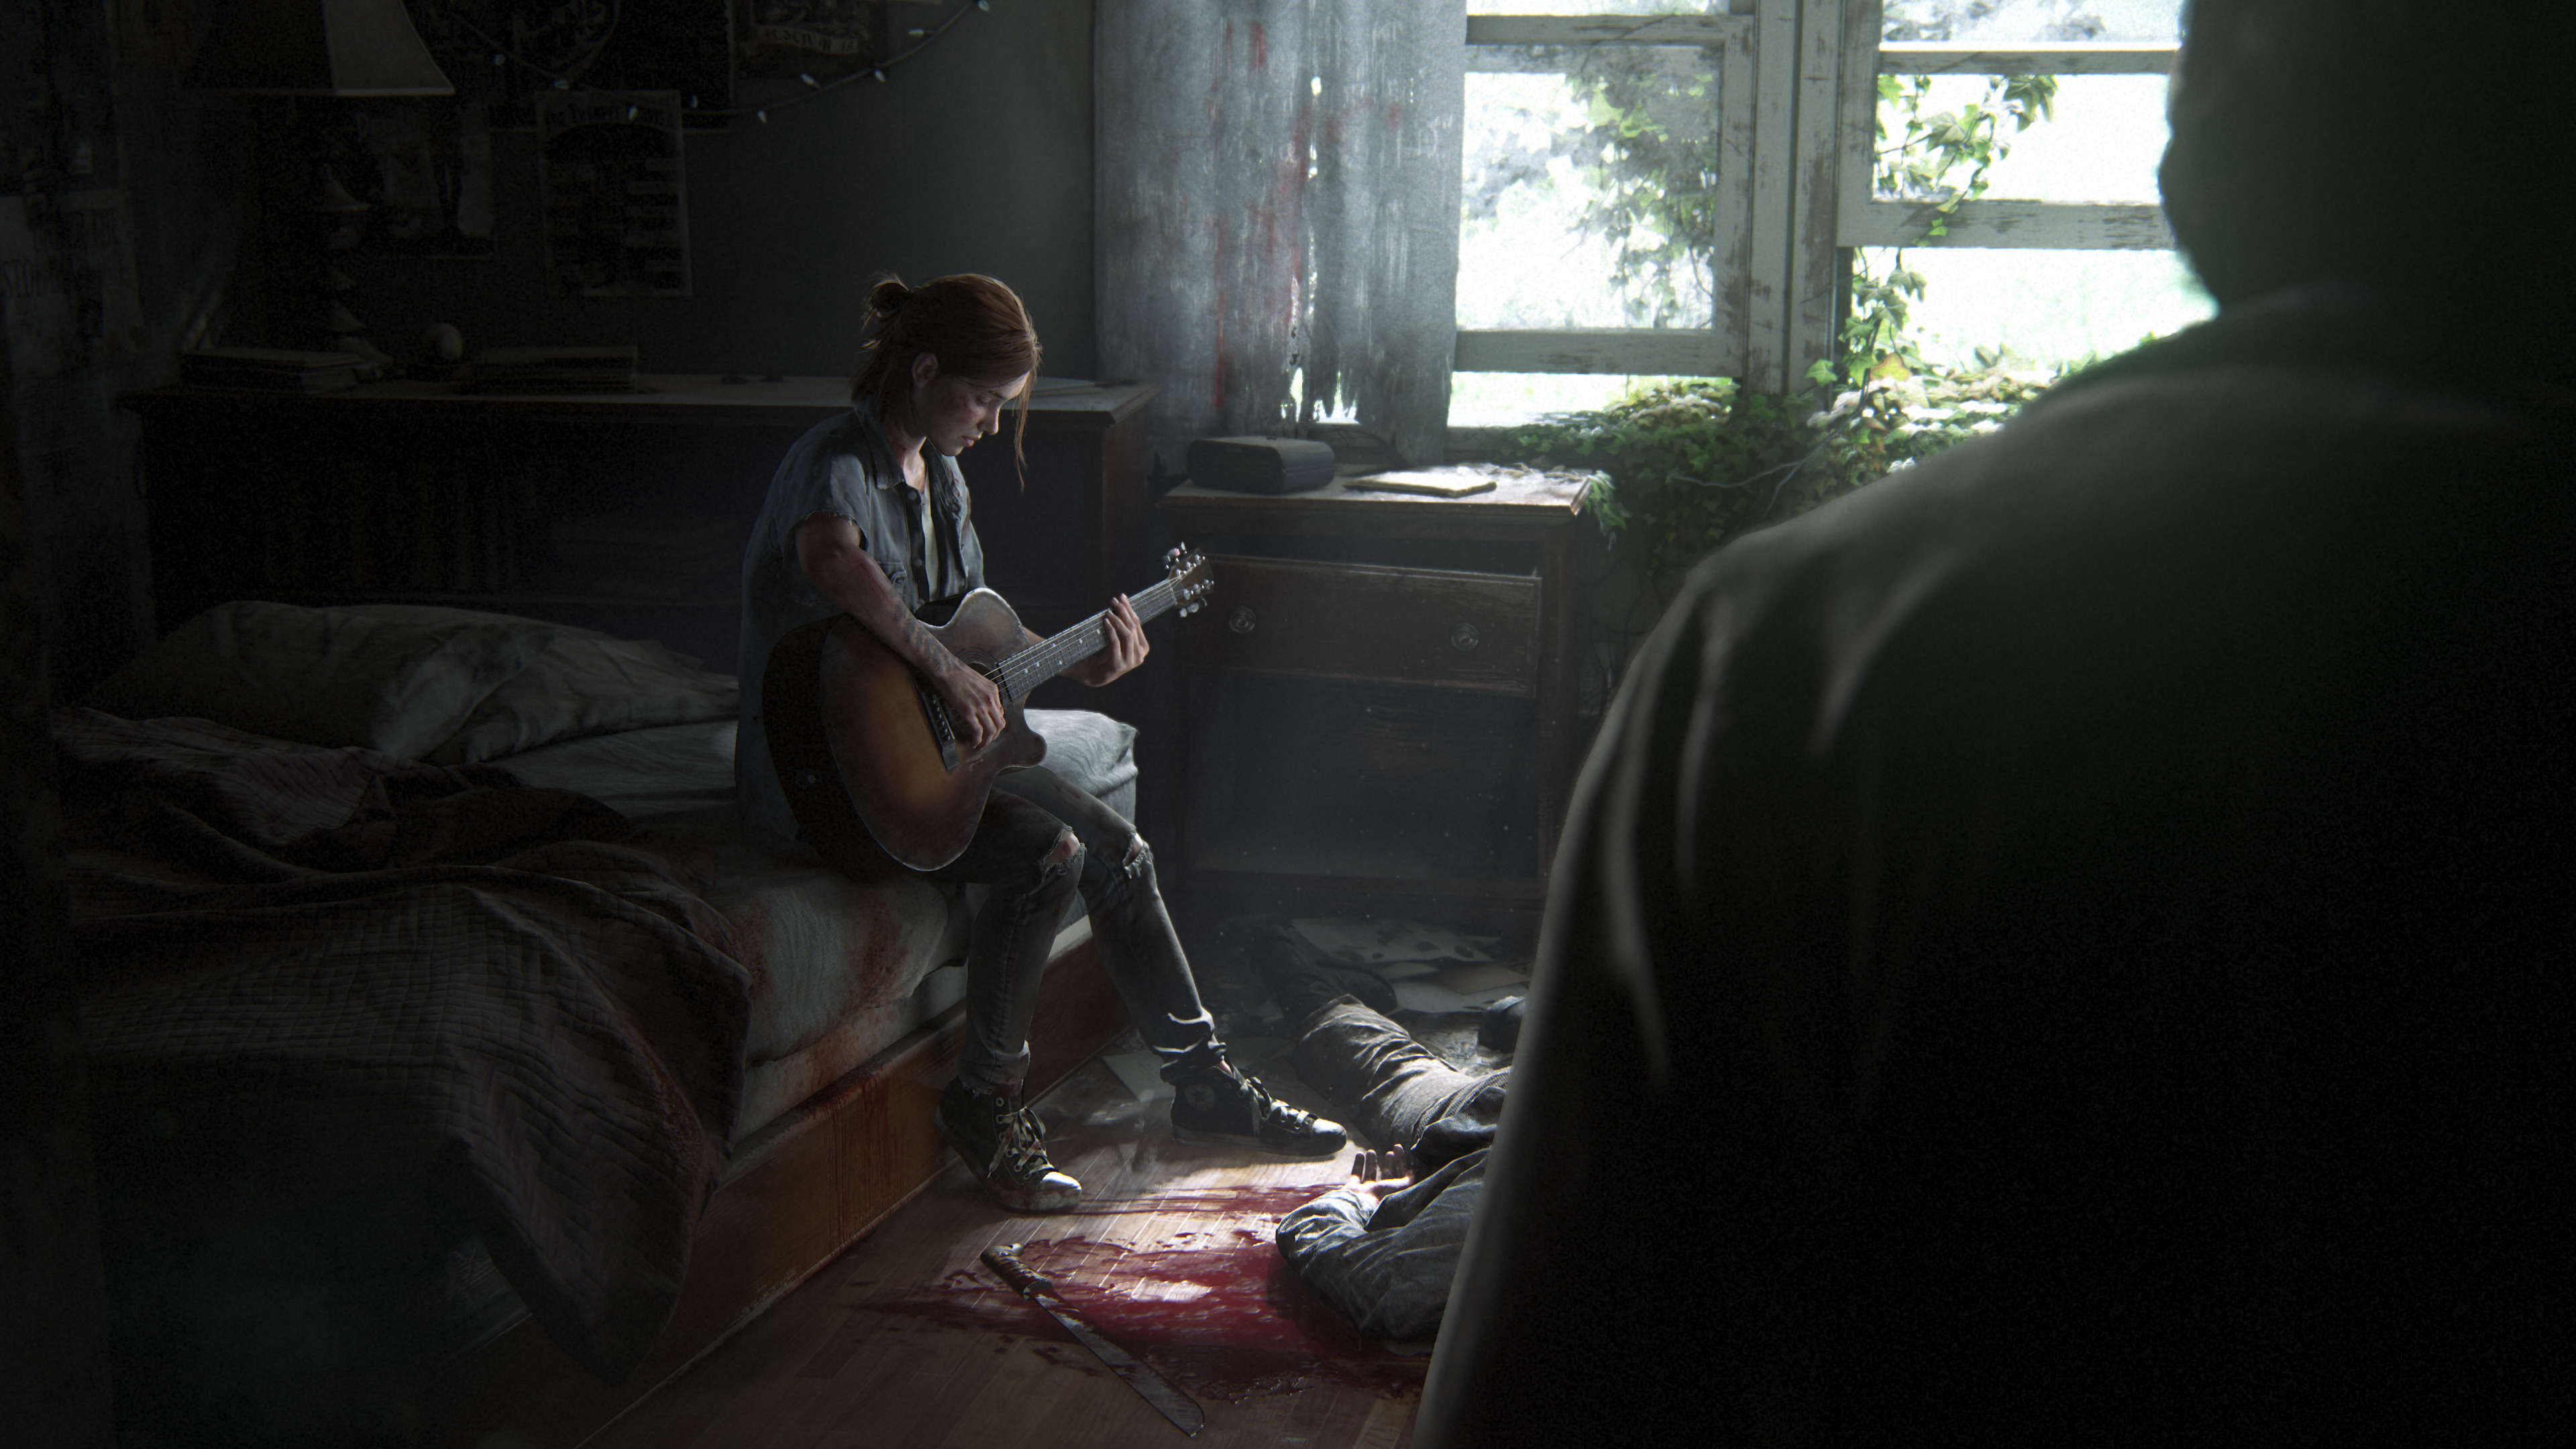 Piirros The Last of Us -videopelistä. Pelin päähenkilö Ellie soittaa kitaraa sängyn reunalla. Maassa näkyy osittain verinen ruumis.